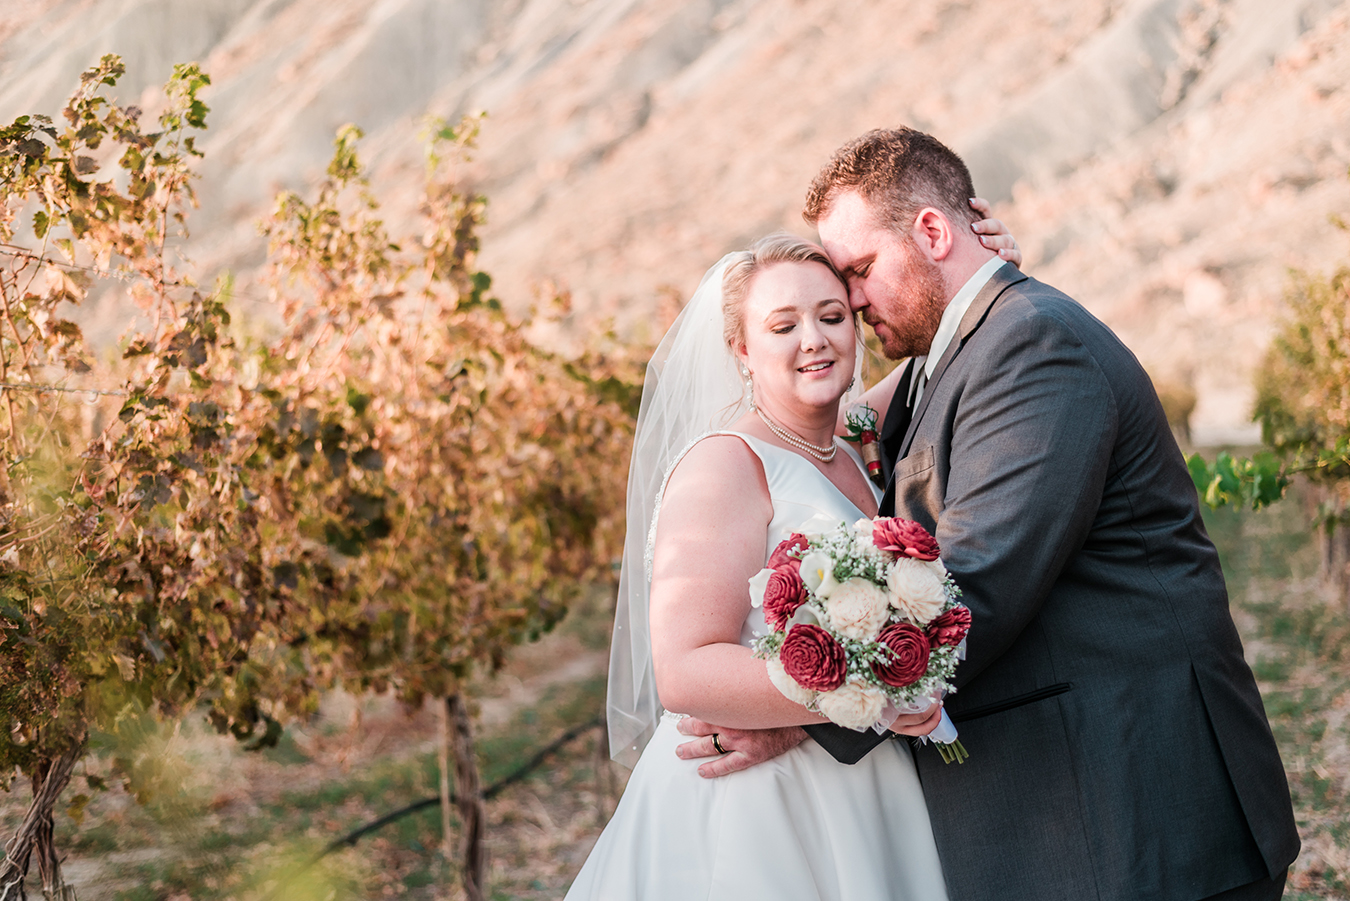 Ben & Dessa's autumn wedding at Colorado Wine Country Inn | amanda.matilda.photography